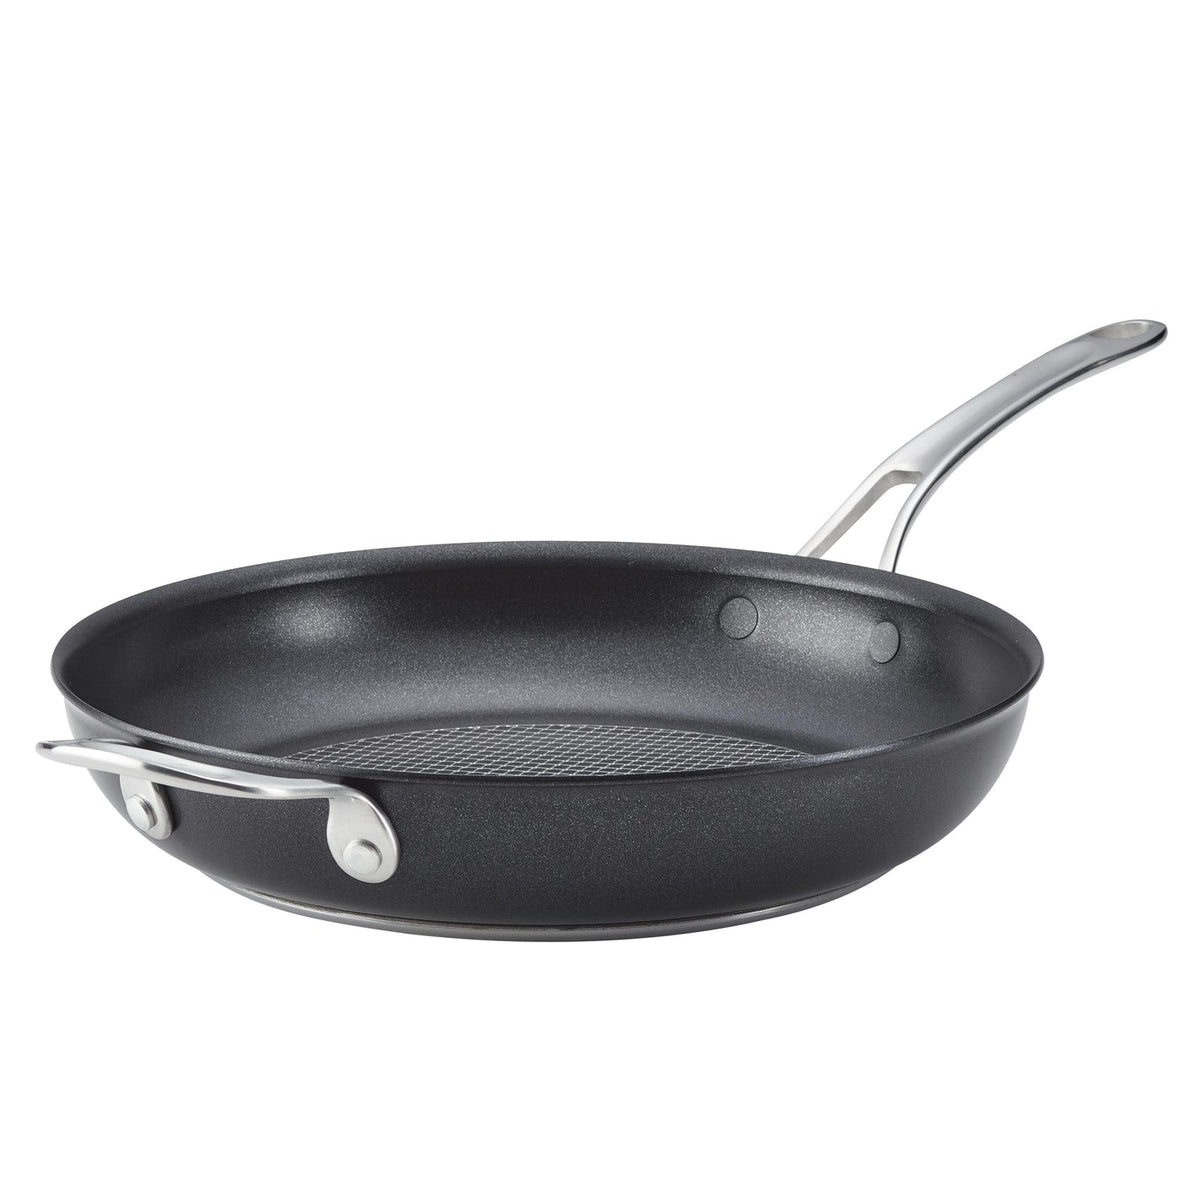 SearTech Aluminum Nonstick Frying Pan with Helper Handle, 12-inch, Super Dark Gray